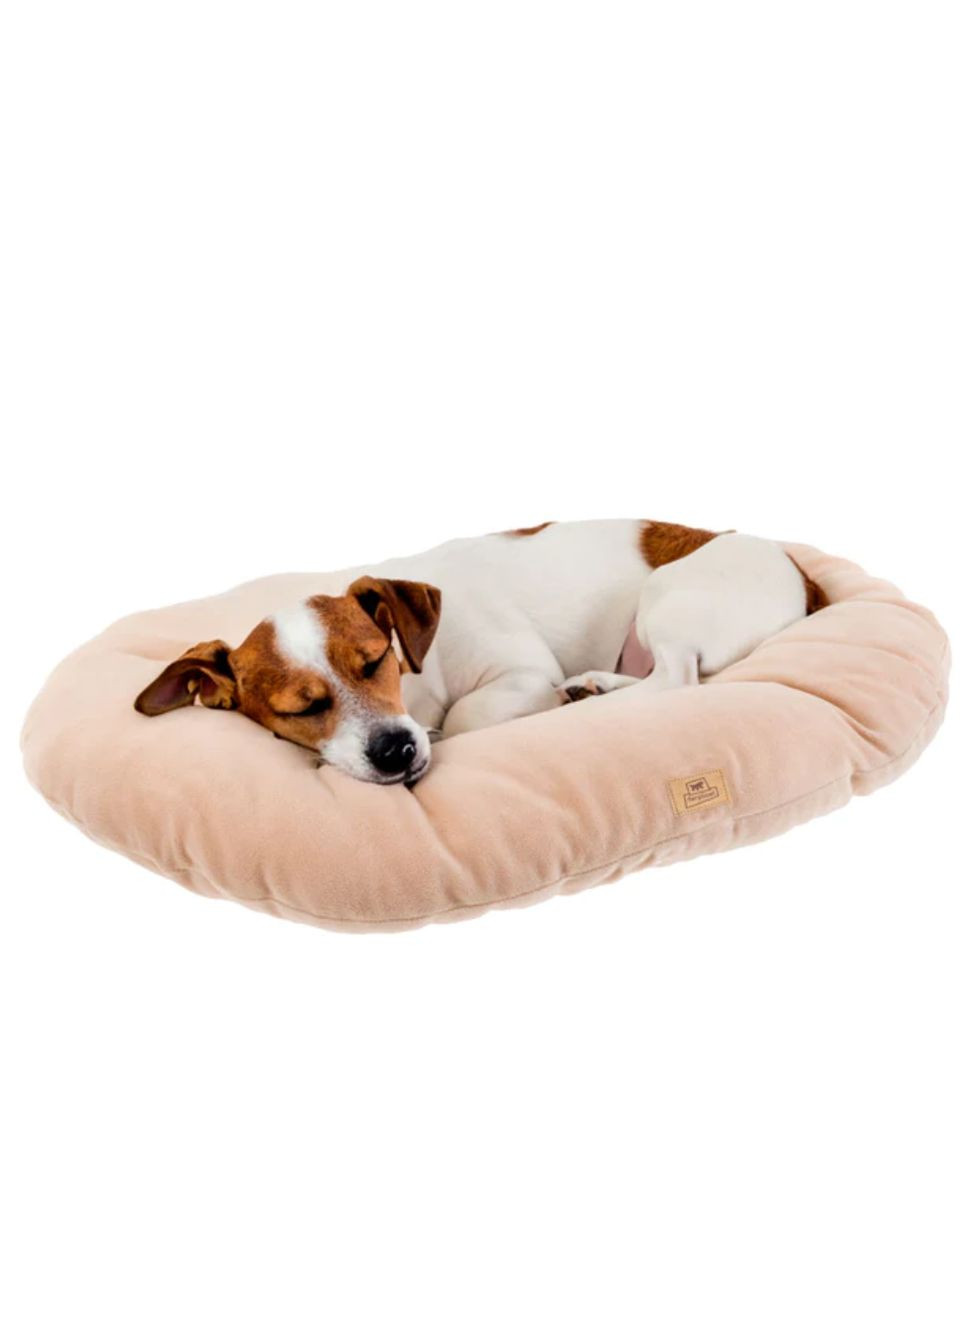 Подушка для собак та кішок Relax 65/6 Microfleece бежева 83306513 Ferplast (272611473)